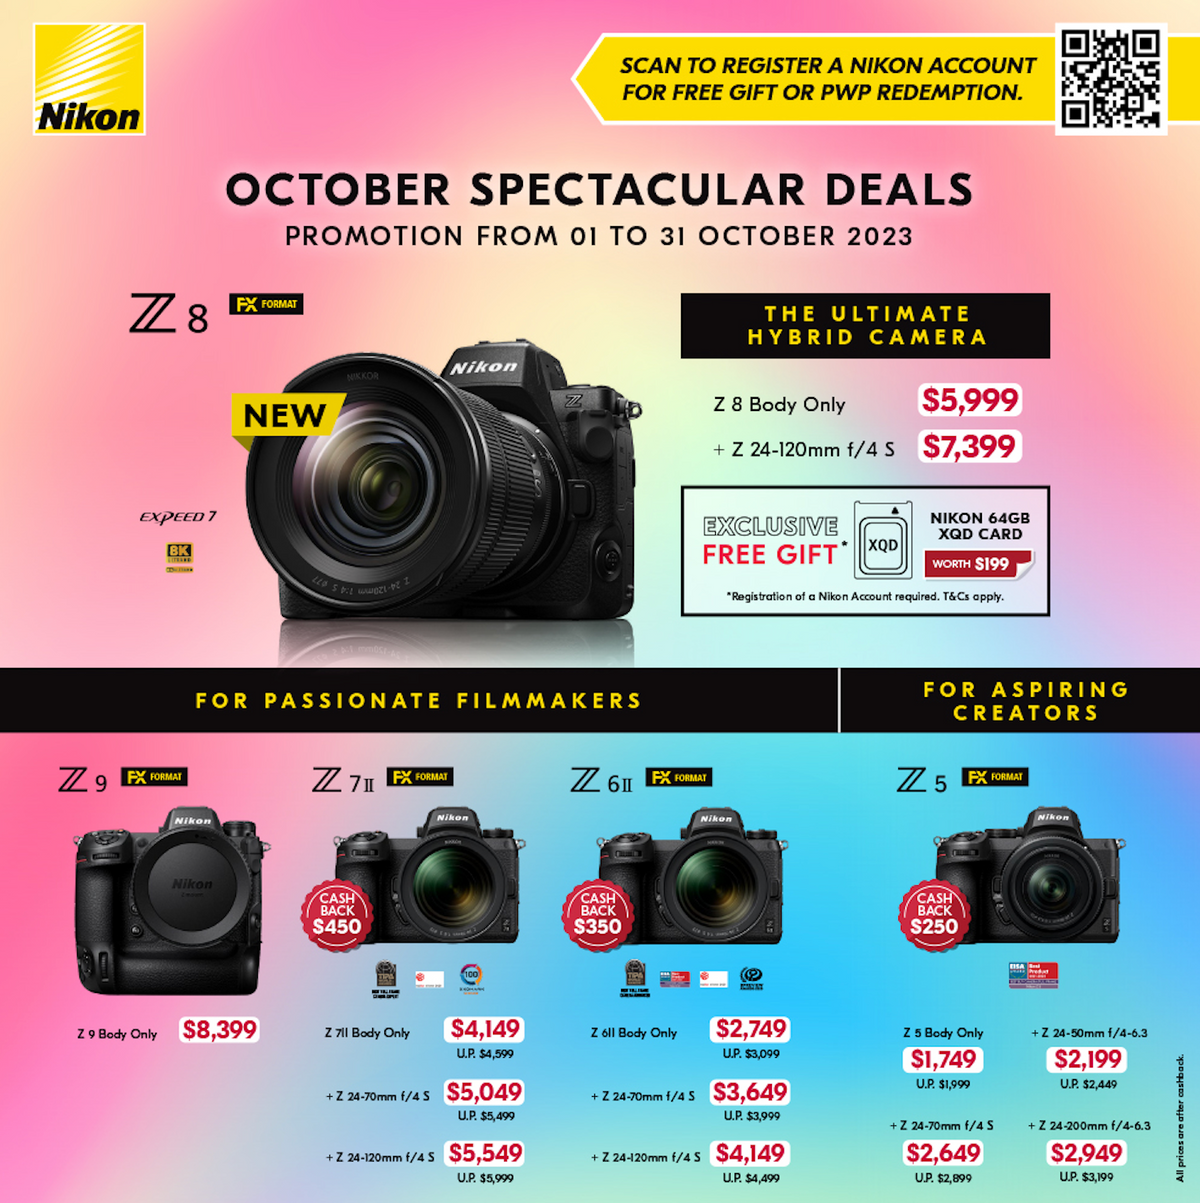 Nikon's October Spectacular Deals